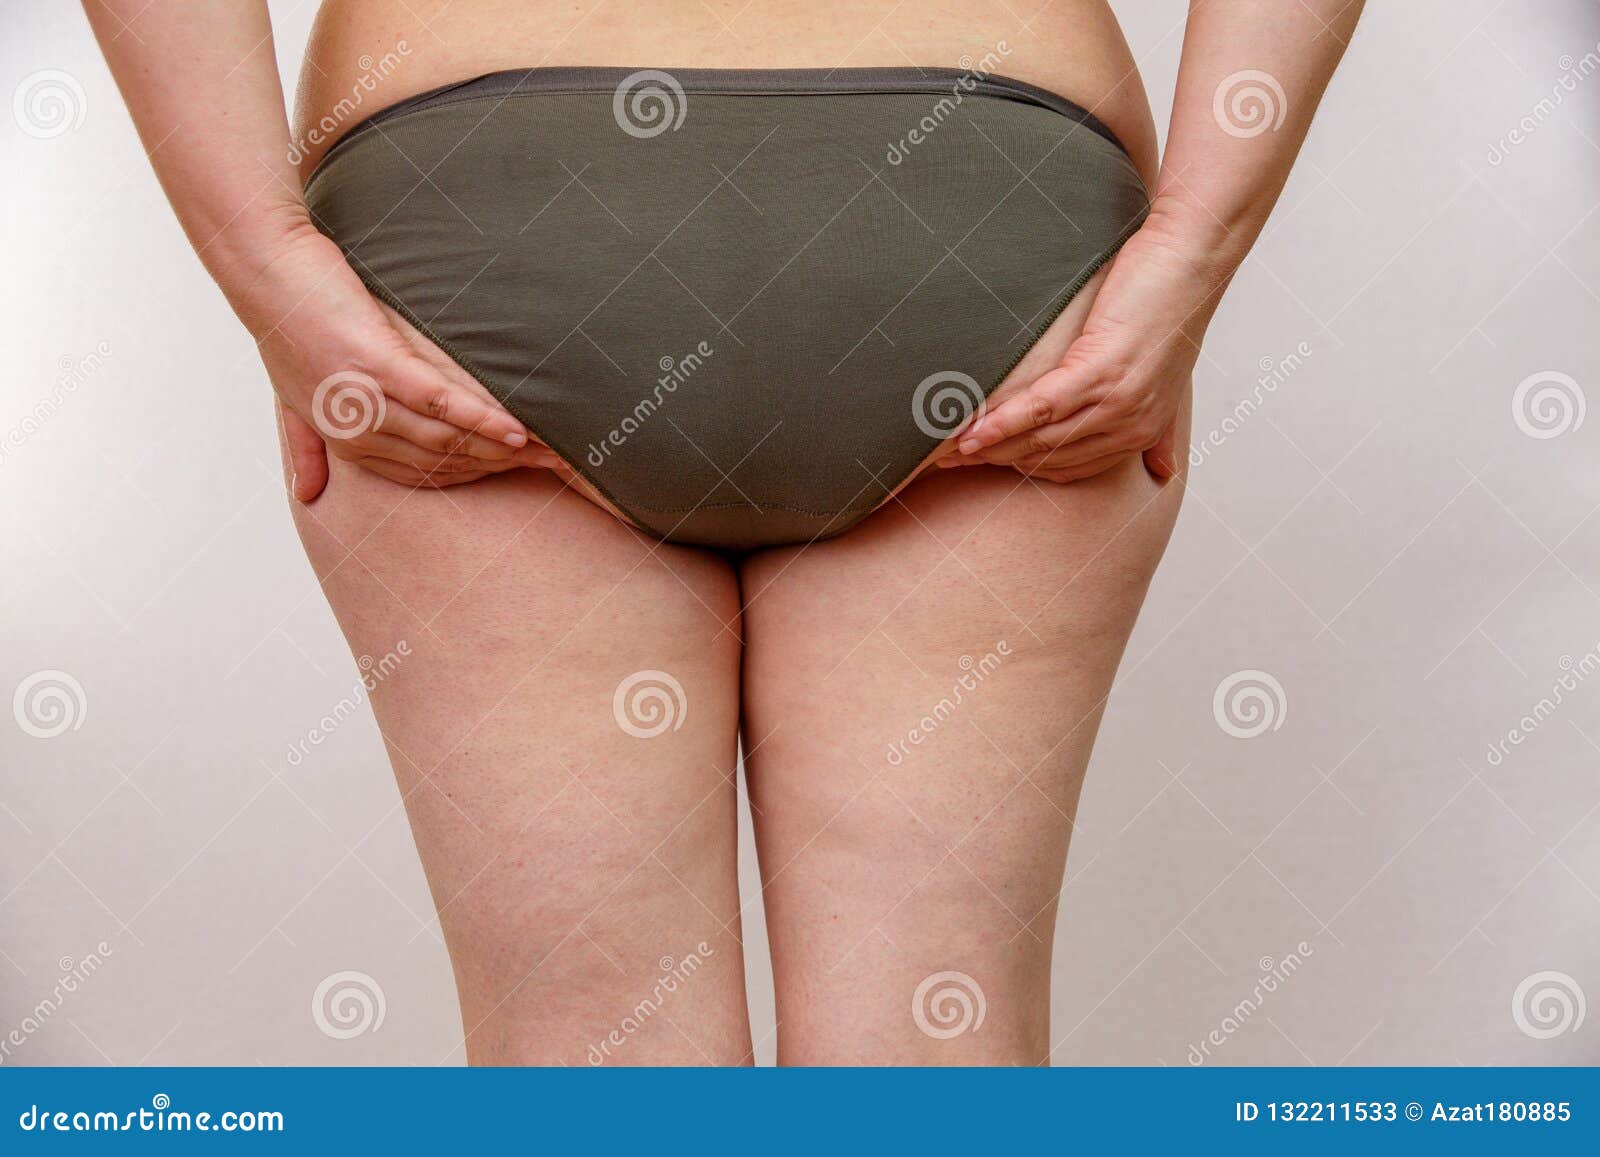 Ass Fat Old Woman